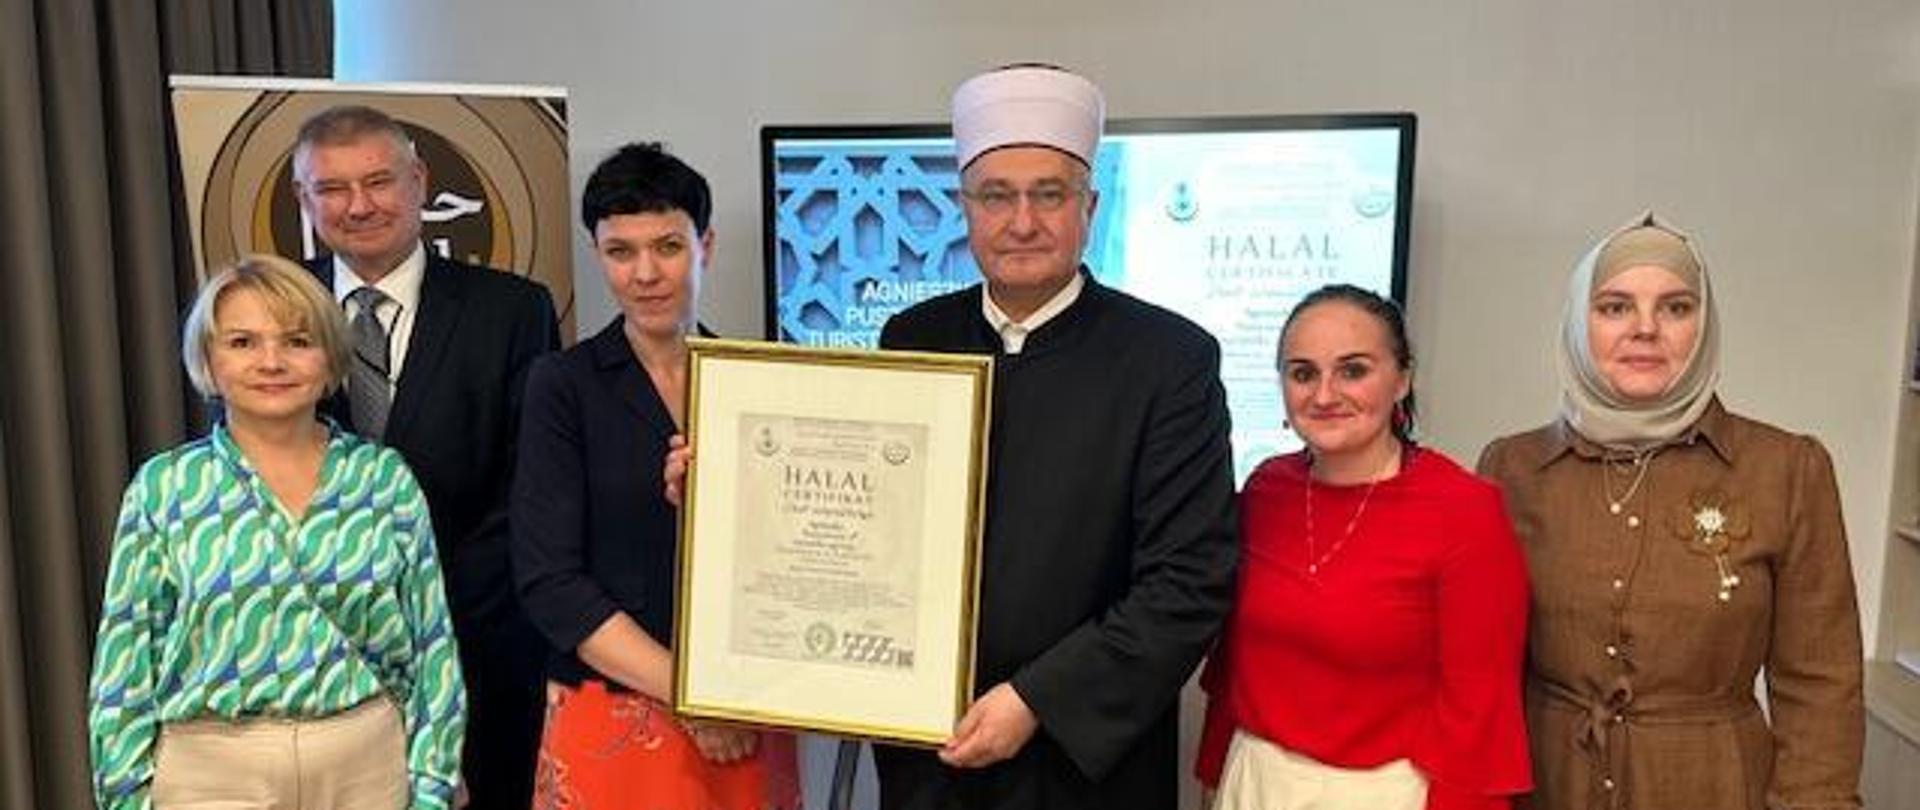 Uroczystości przyznania certyfikatu Halal